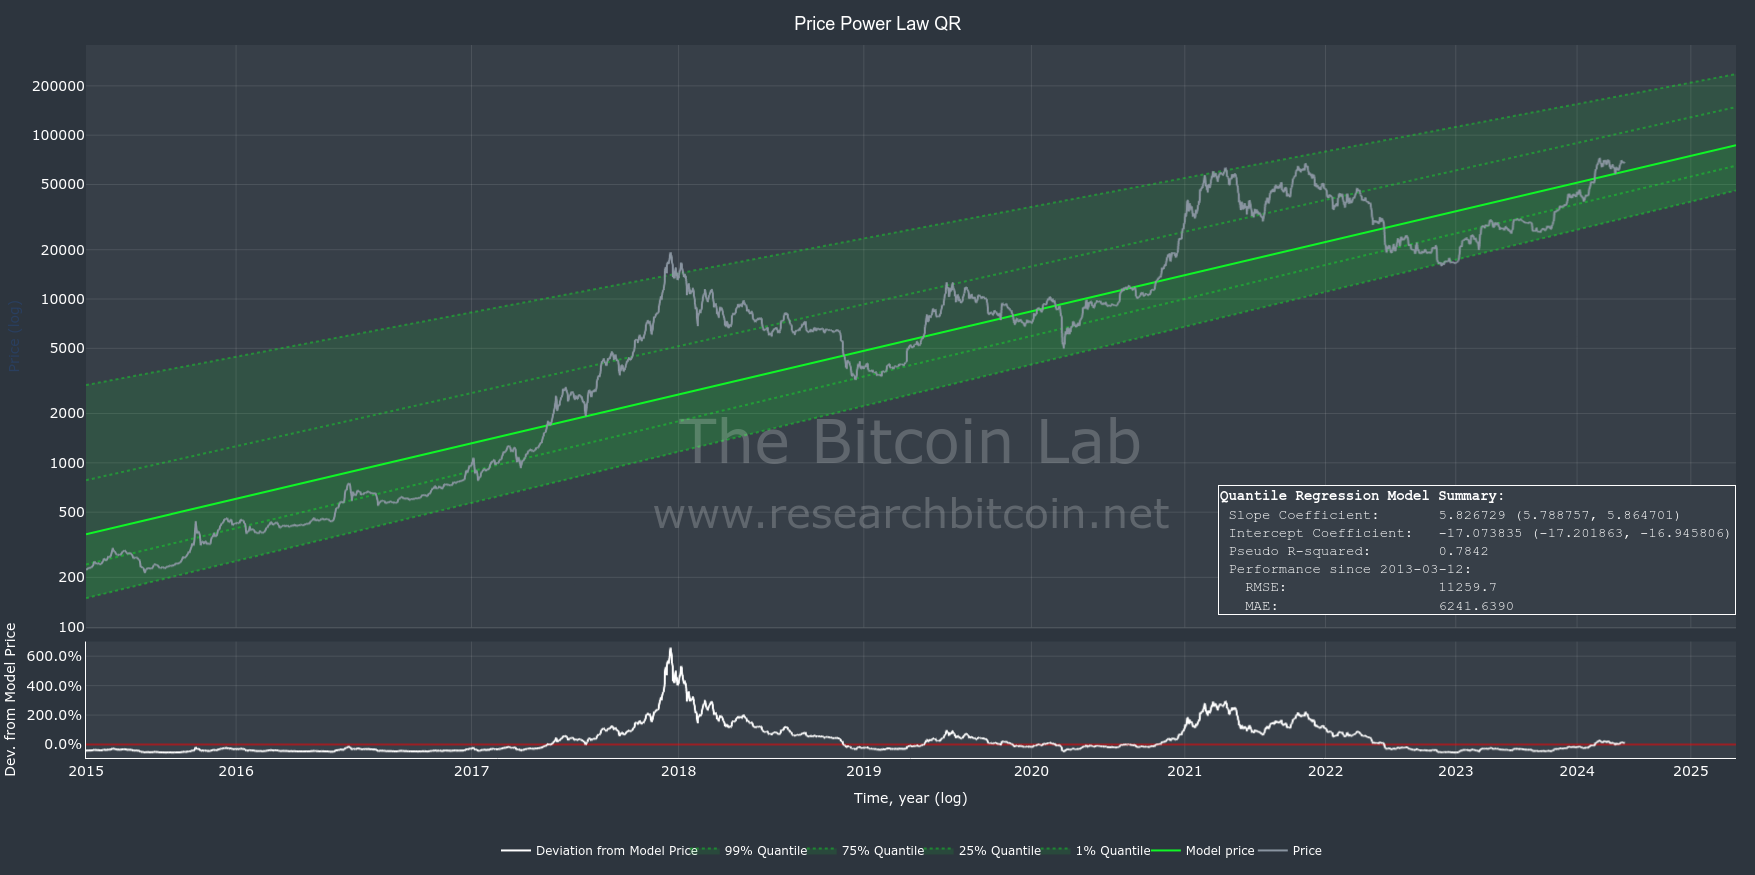 Bitcoin Power Law Price Prediction Using Quantile Regression